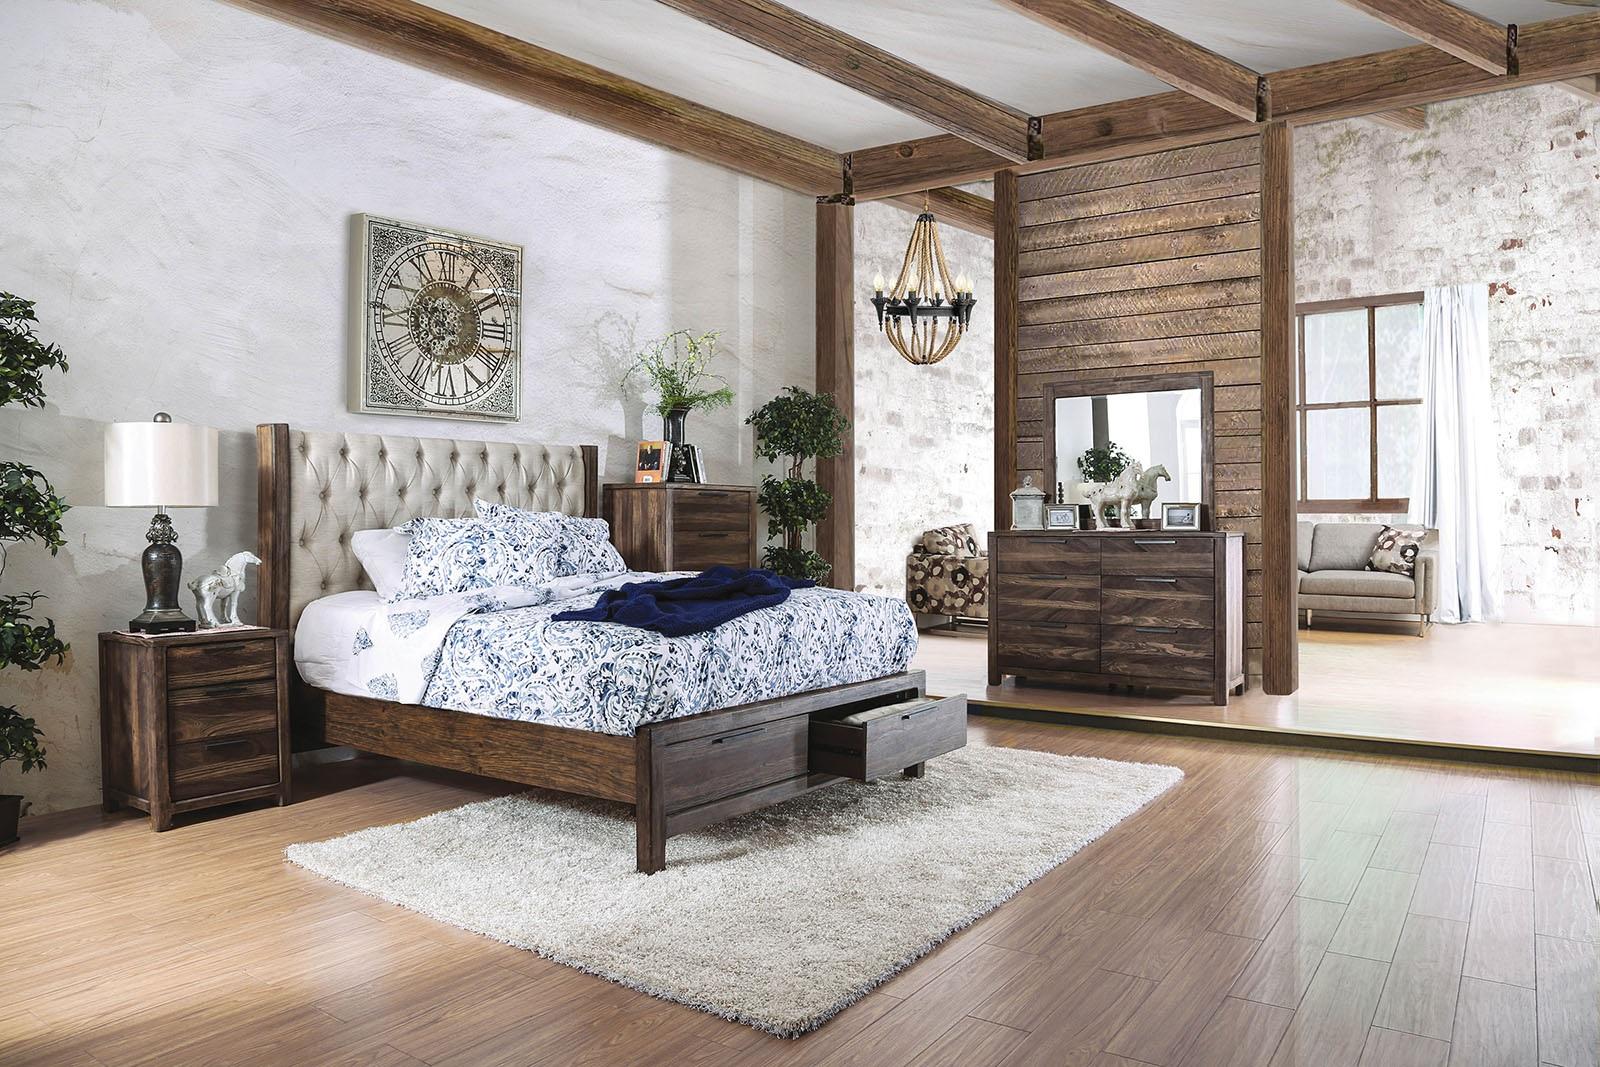 

    
CM7577DR-Q-3PC Rustic Natural & Beige Solid Wood Queen Bedroom Set 3pcs Furniture of America CM7577DR-Q Hutchinson
